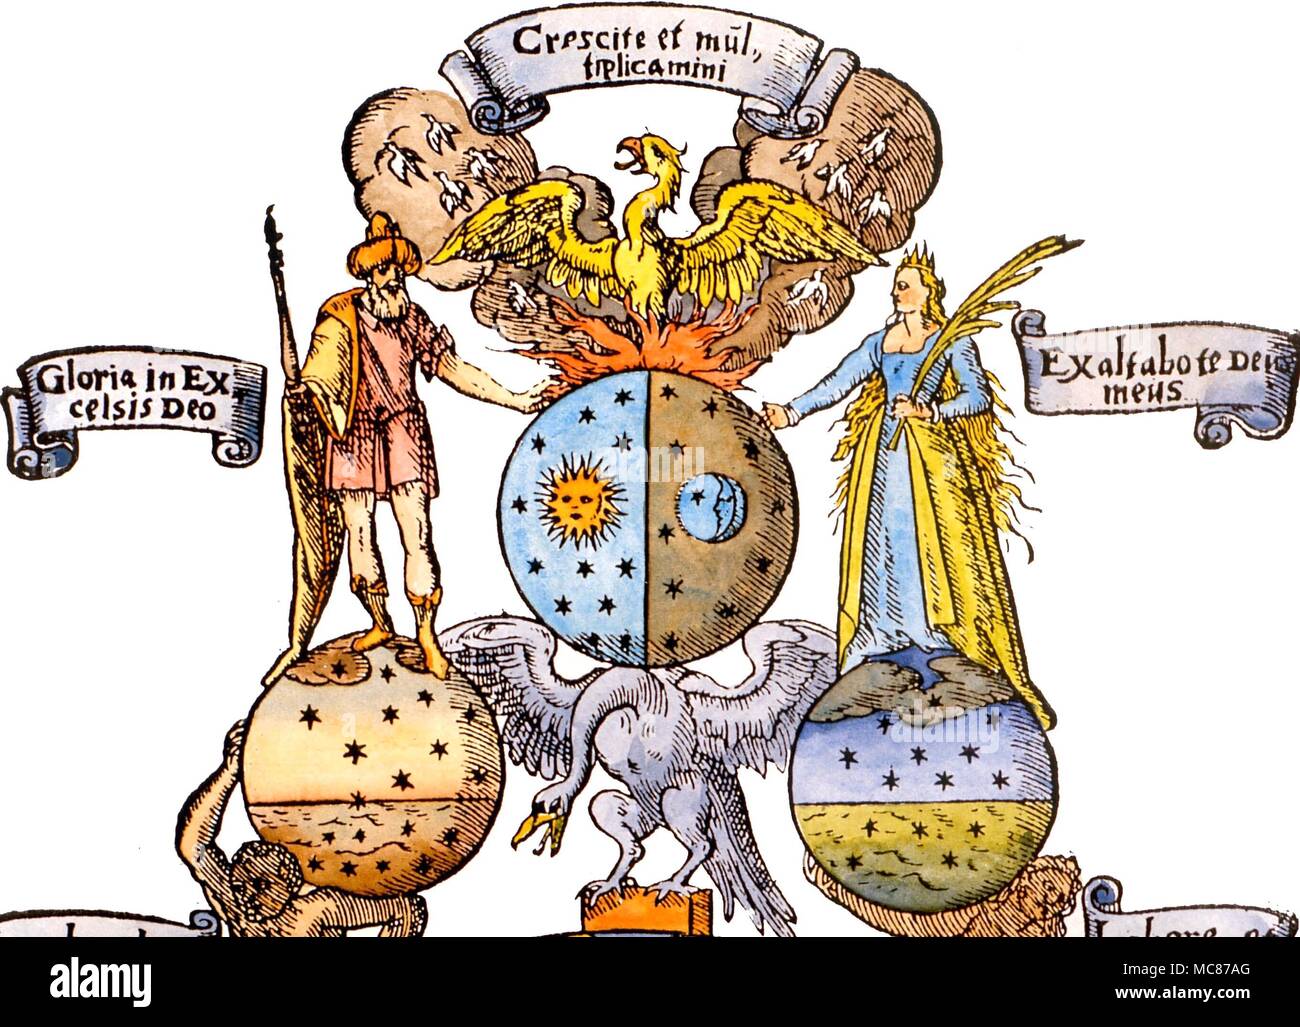 Dettaglio del solare e lunare figure, con il Phoenix rising dalle fiamme. Il giovane di Phoenix, volare verso le nuvole, è un immagine alchemica della pietra filosofale. Da Andreas Libavius' 'Alchymia', 1606 Foto Stock